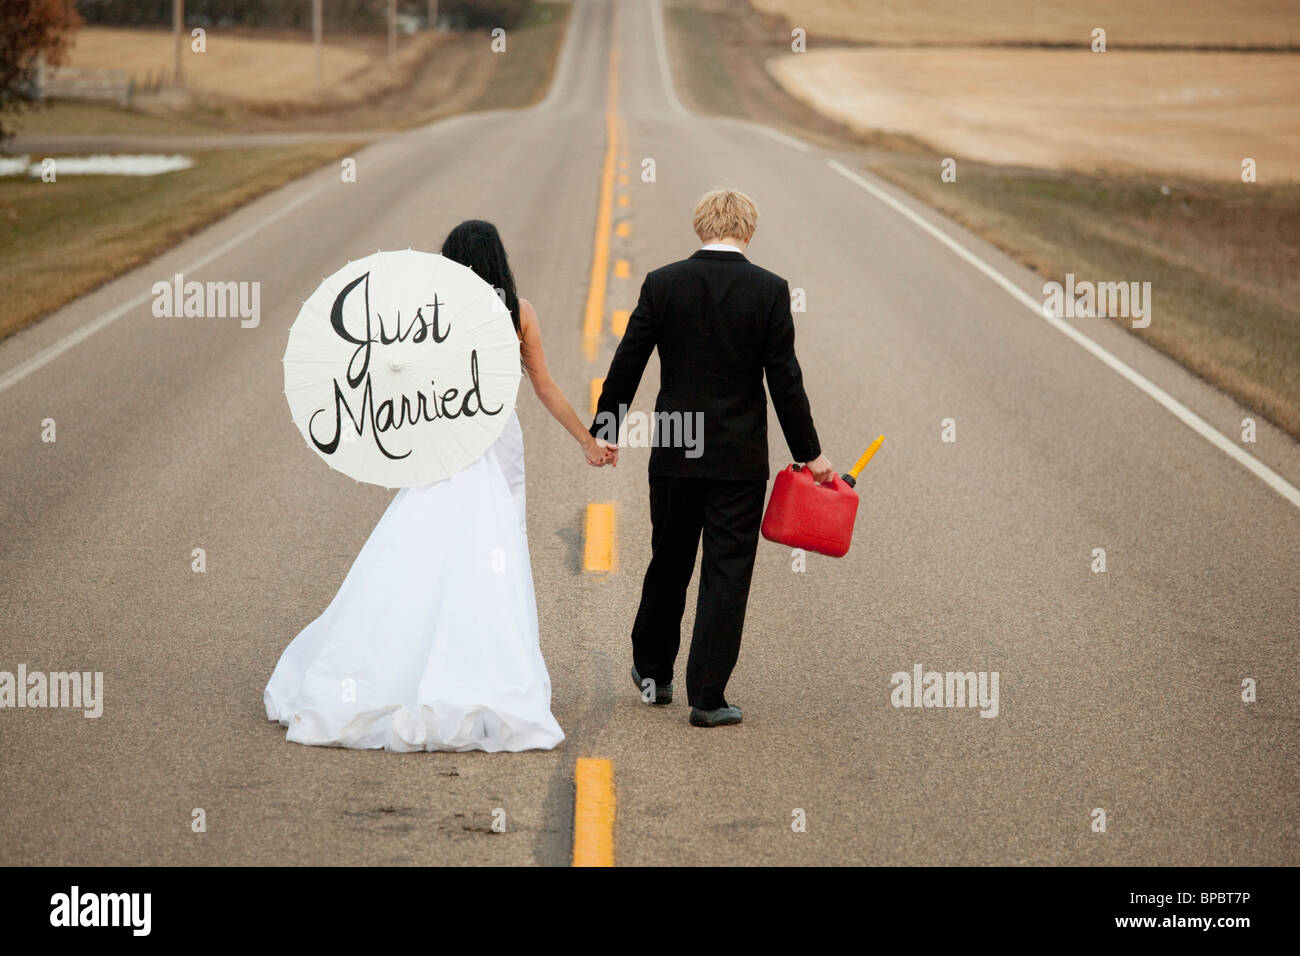 drei Hügel, Alberta, Kanada; eine Braut und Bräutigam zu Fuß auf einer Straße hält ein Kanister und ein Sonnenschirm, die sagen, "just married" Stockfoto